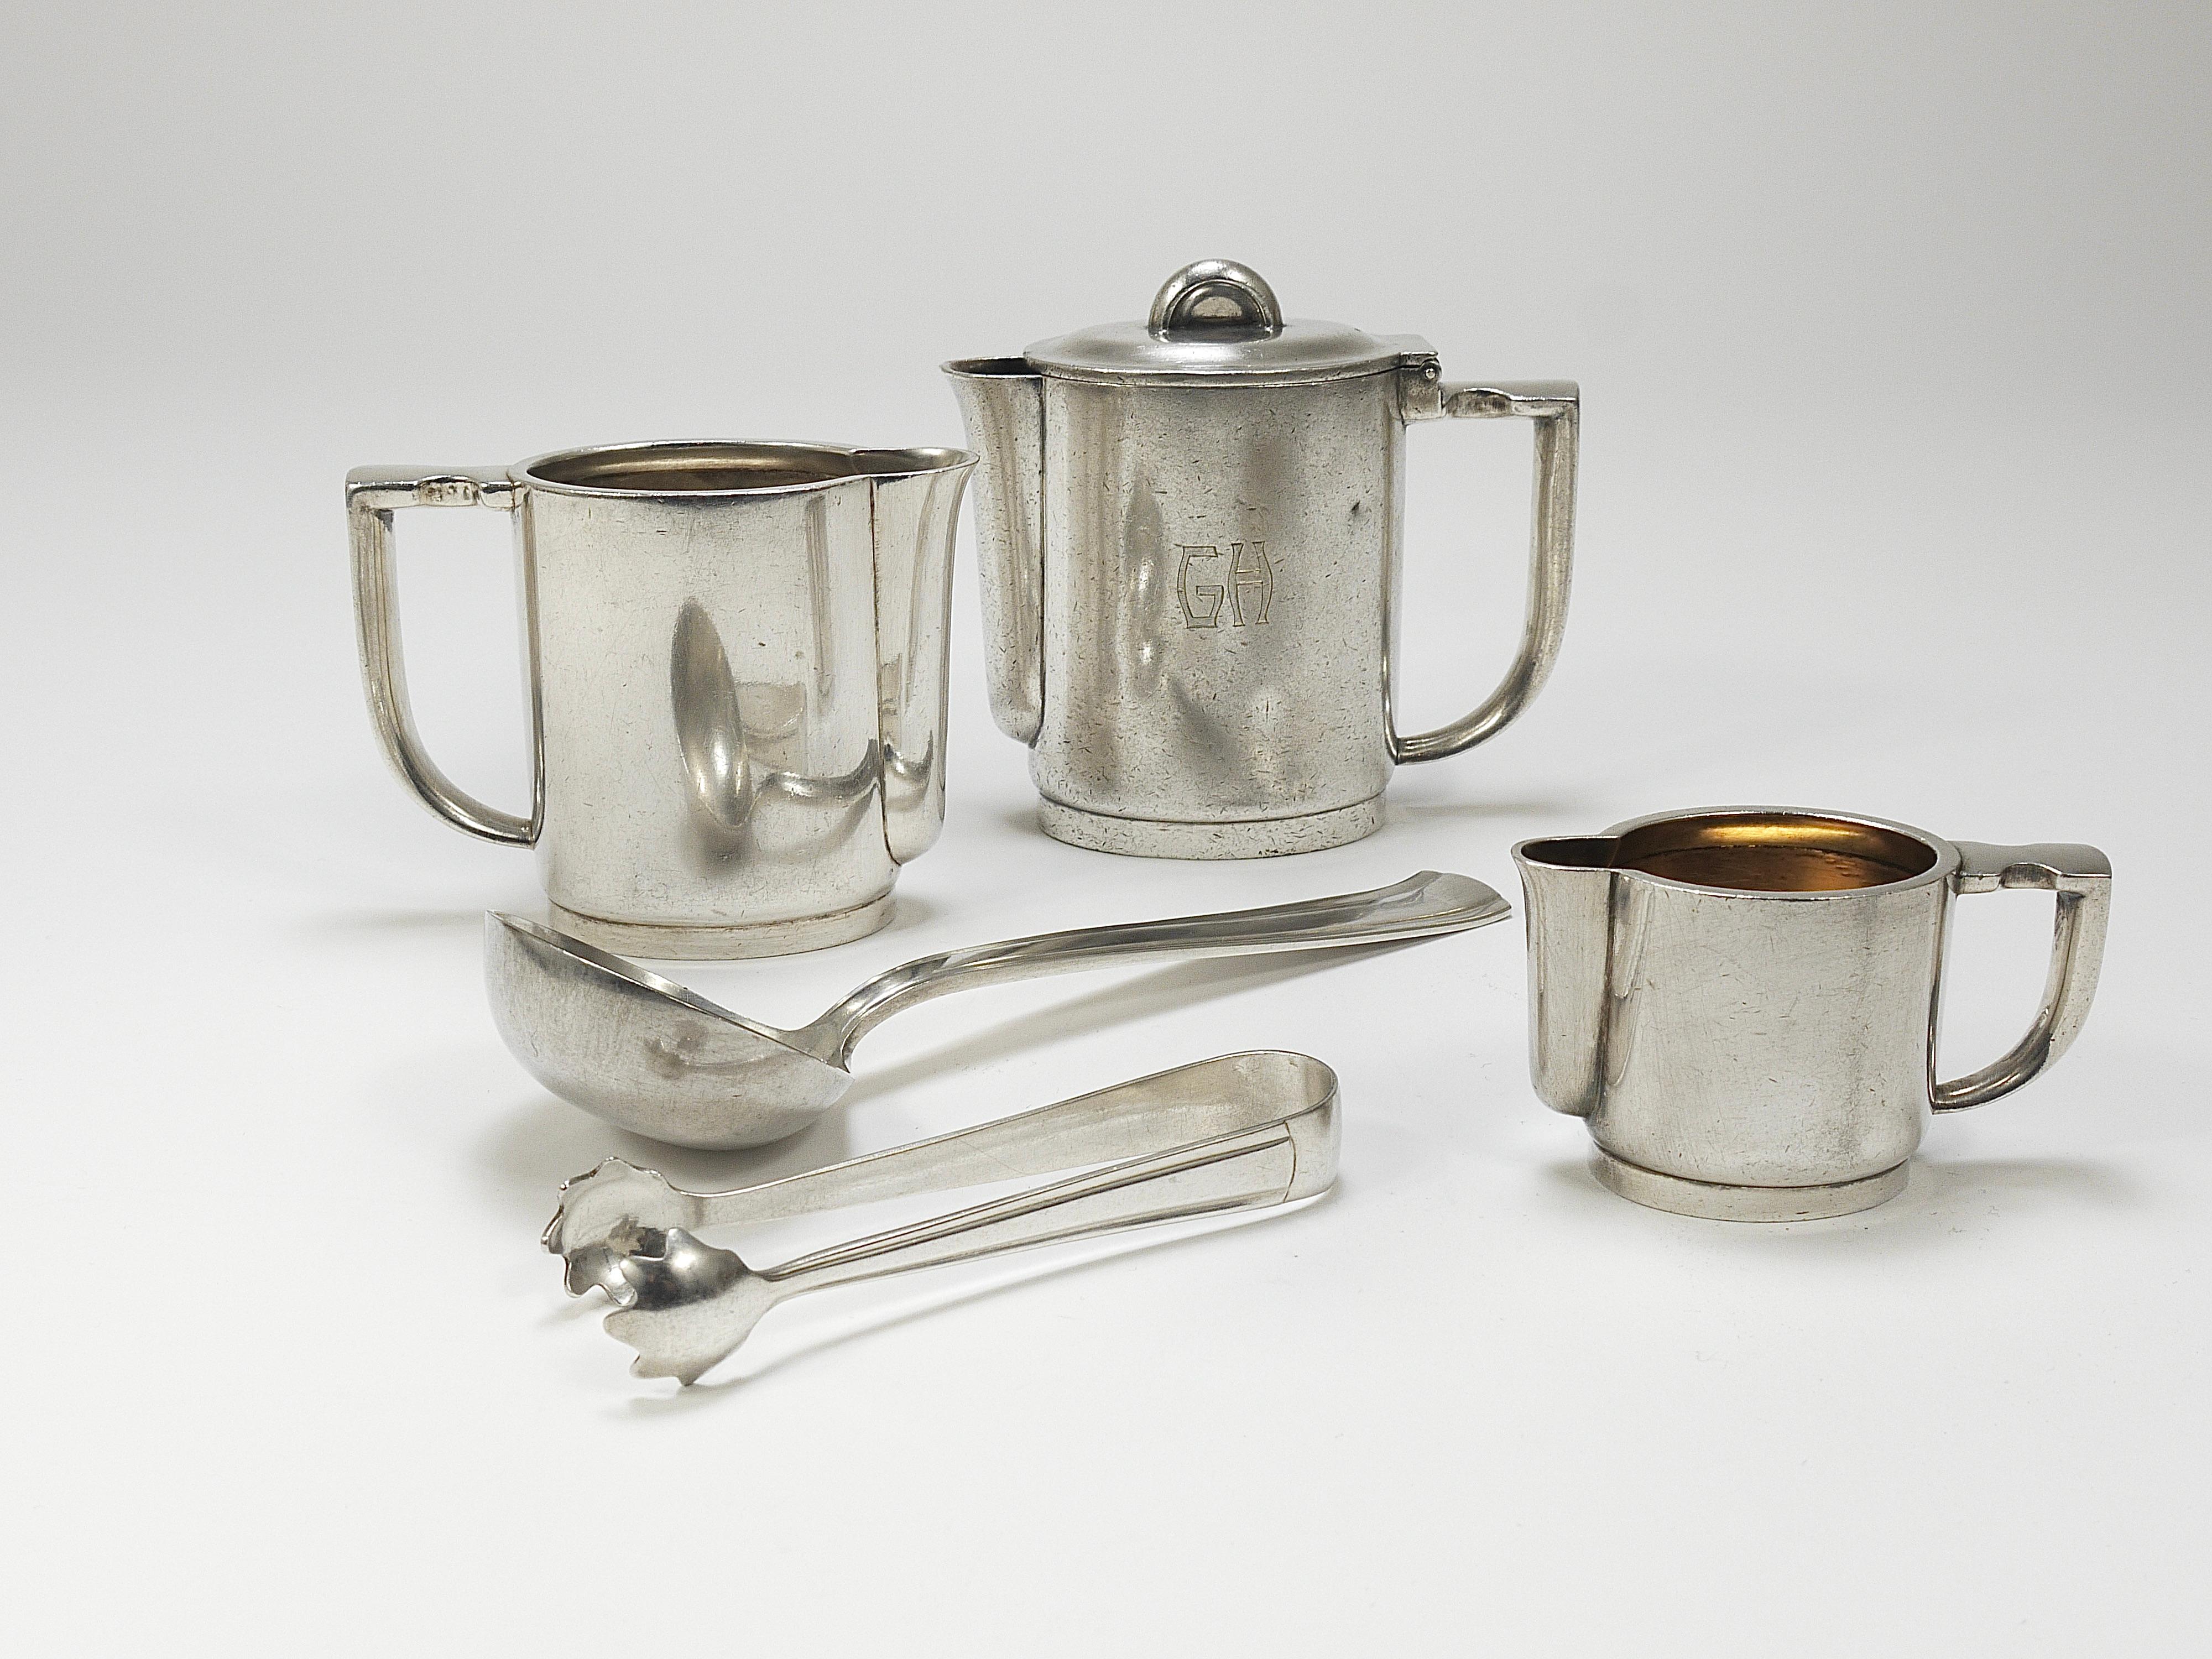 Une élégante collection de vaisselle Art déco, conçue par Gio Ponti pour Arthur Krupp et fabriquée dans les années 1930 par Krupp Berndorf en Autriche. La Collectional comprend 
une théière ou une cafetière (20 cl)
un pot à lait / un pot à crème